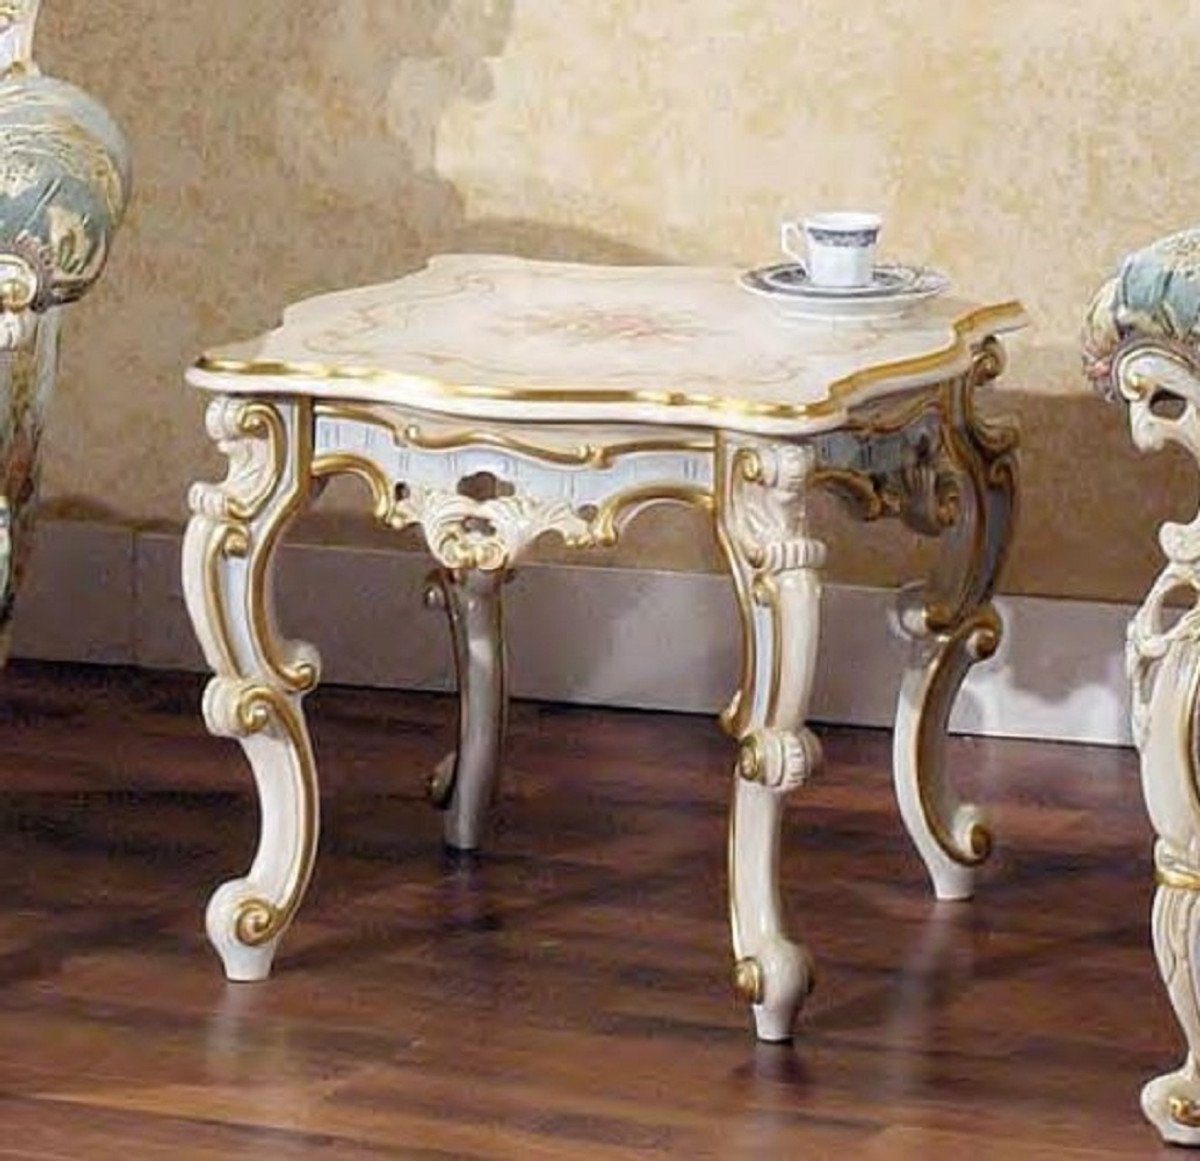 Casa Padrino Beistelltisch Luxus Barock Beistelltisch Weiß / Mehrfarbig / Gold 55 x 55 x H. 48 cm - Prunkvoller Massivholz Tisch - Barock & Hotel Möbel - Luxus Qualität - Made in Italy